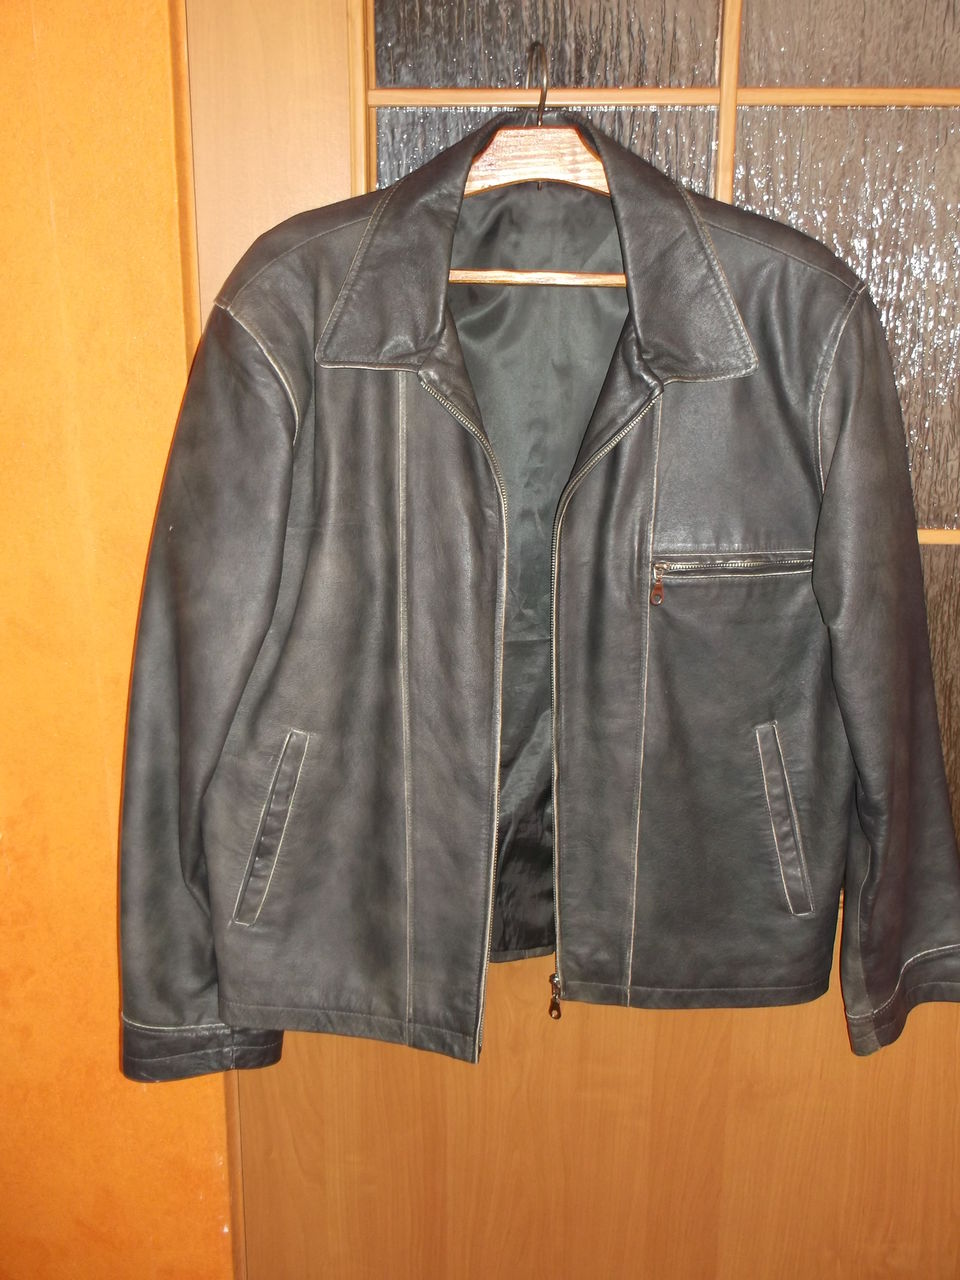 Авито мужской куртка 48. Муж кожаные куртки большого размера. Кожаные куртки на авито. Авито кожаная куртка мужская. Авито мужские кожаные куртки 52 размера.